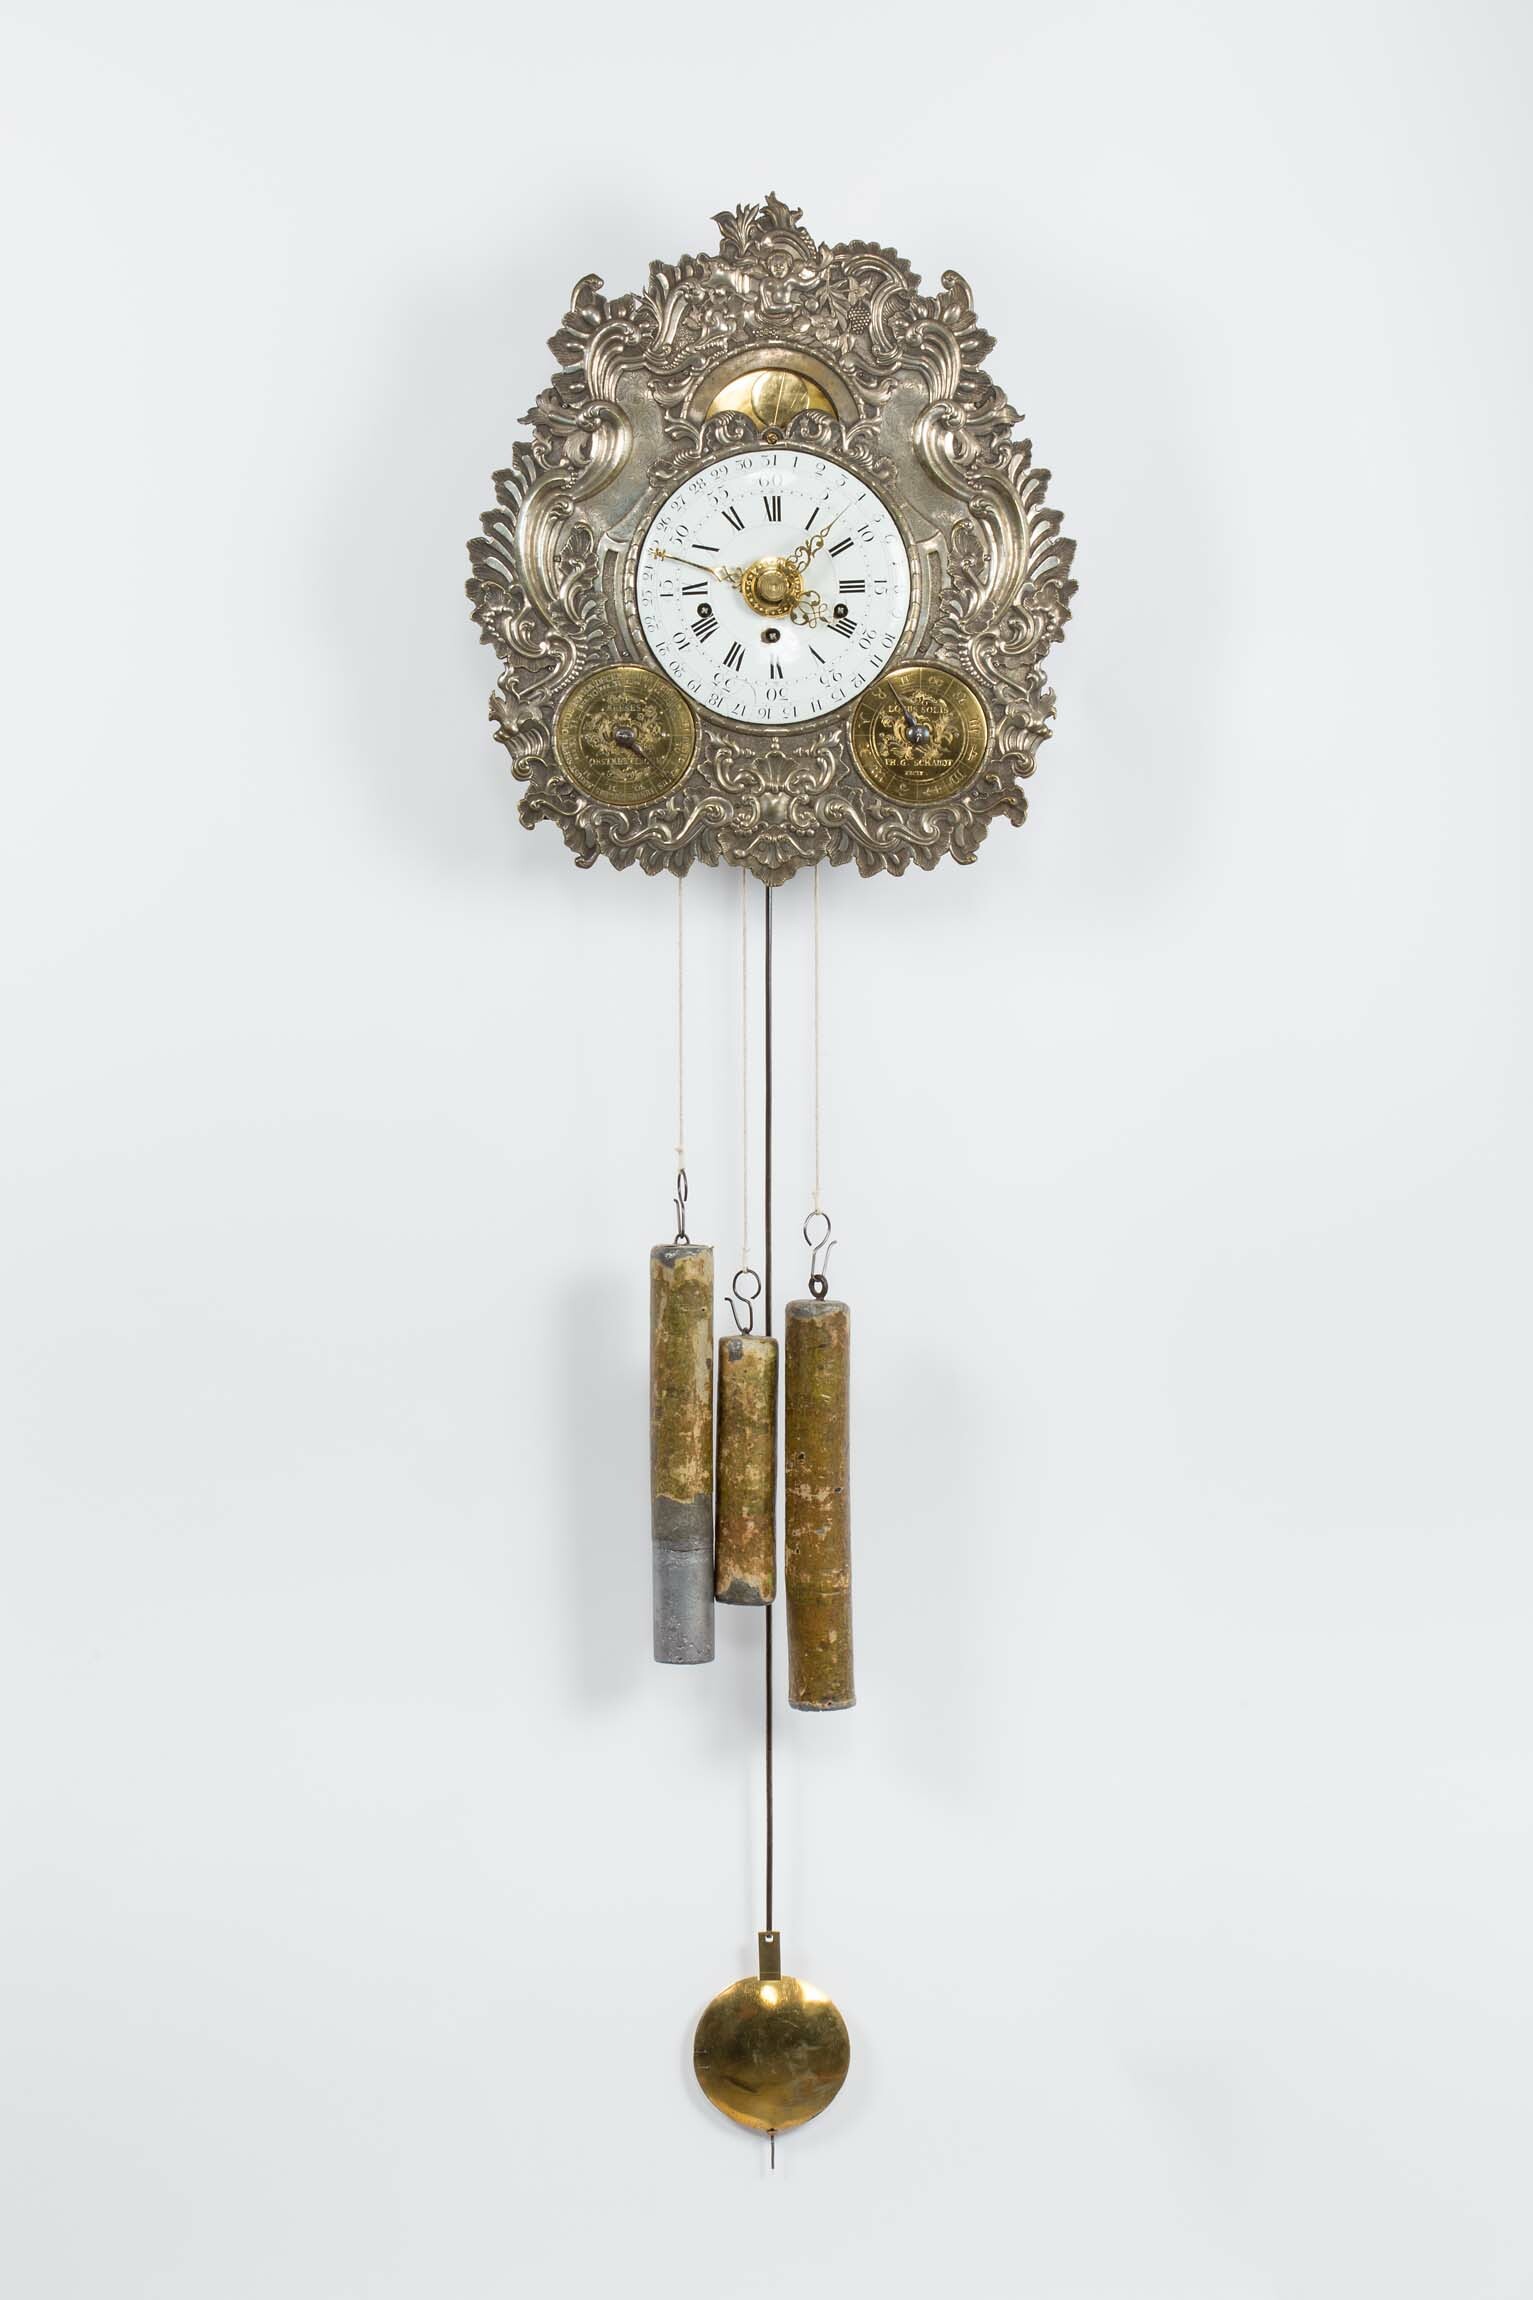 Astronomische Uhr, P. G. Schaudt, Onstmettingen, um 1772 (Deutsches Uhrenmuseum CC BY-SA)